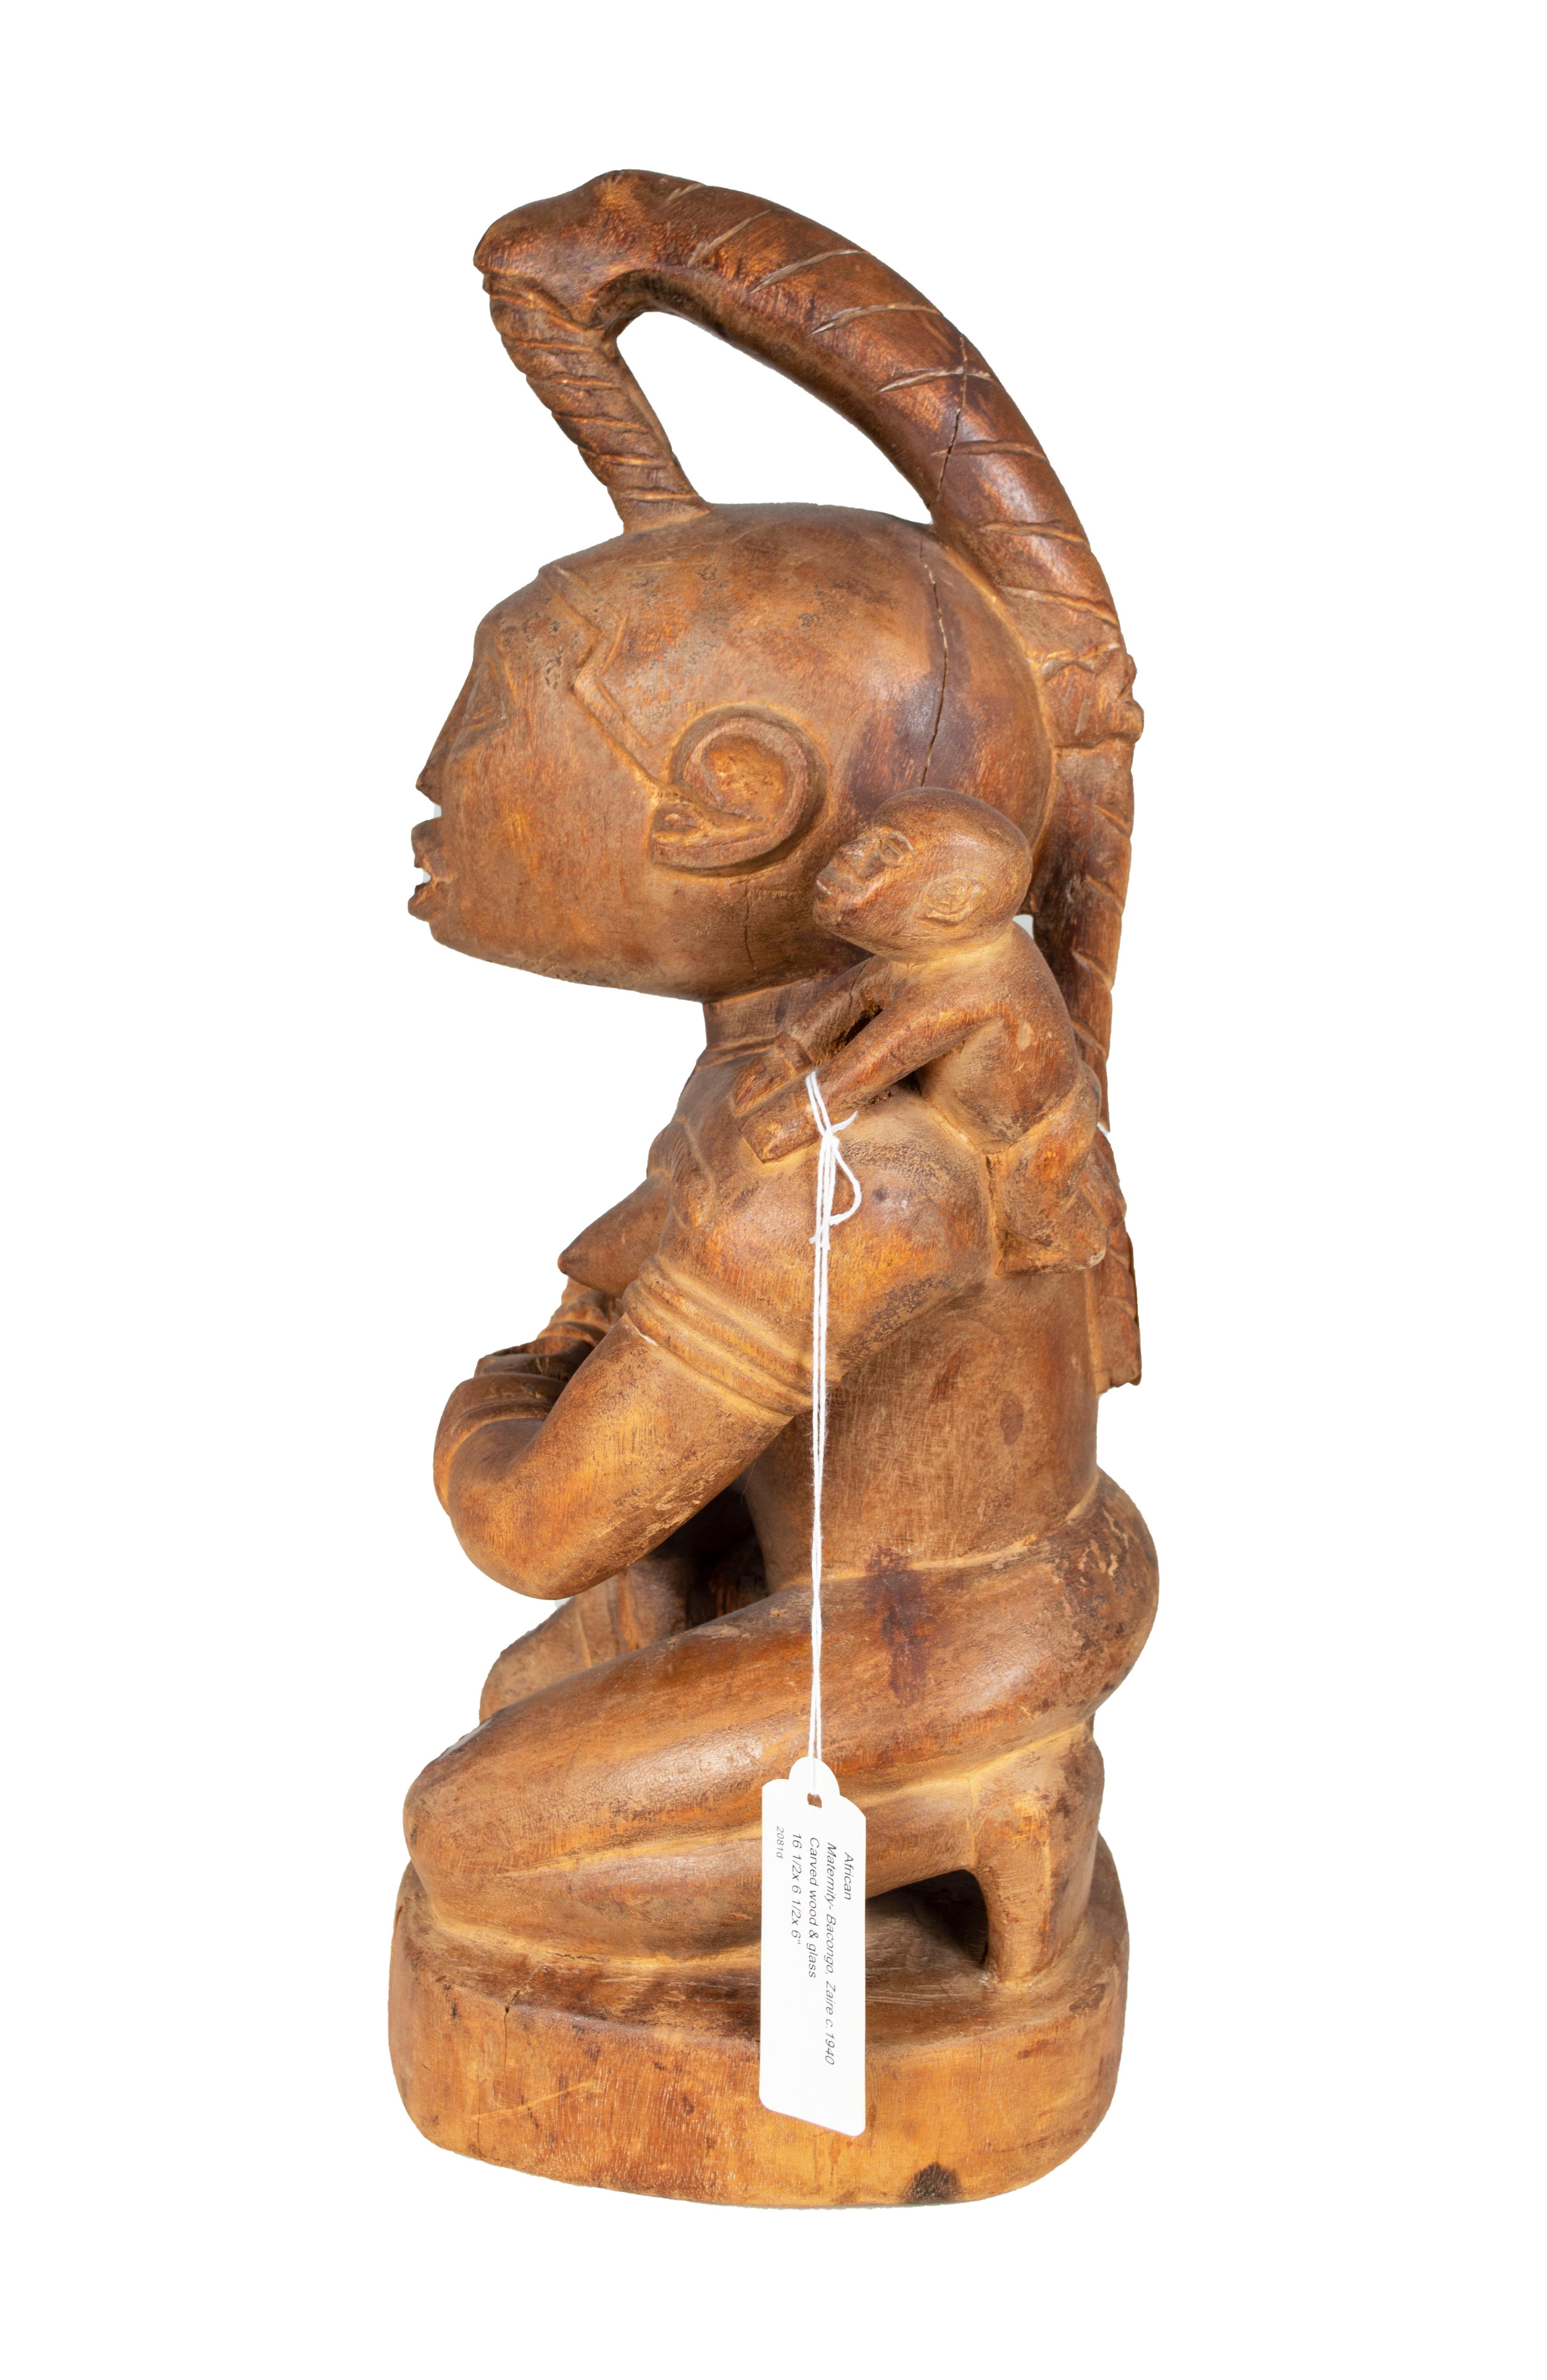 „Maternity-Bacongo, Zaire“, geschaffen in der Demokratischen Republik Kongo um 1940 – Sculpture von Unknown